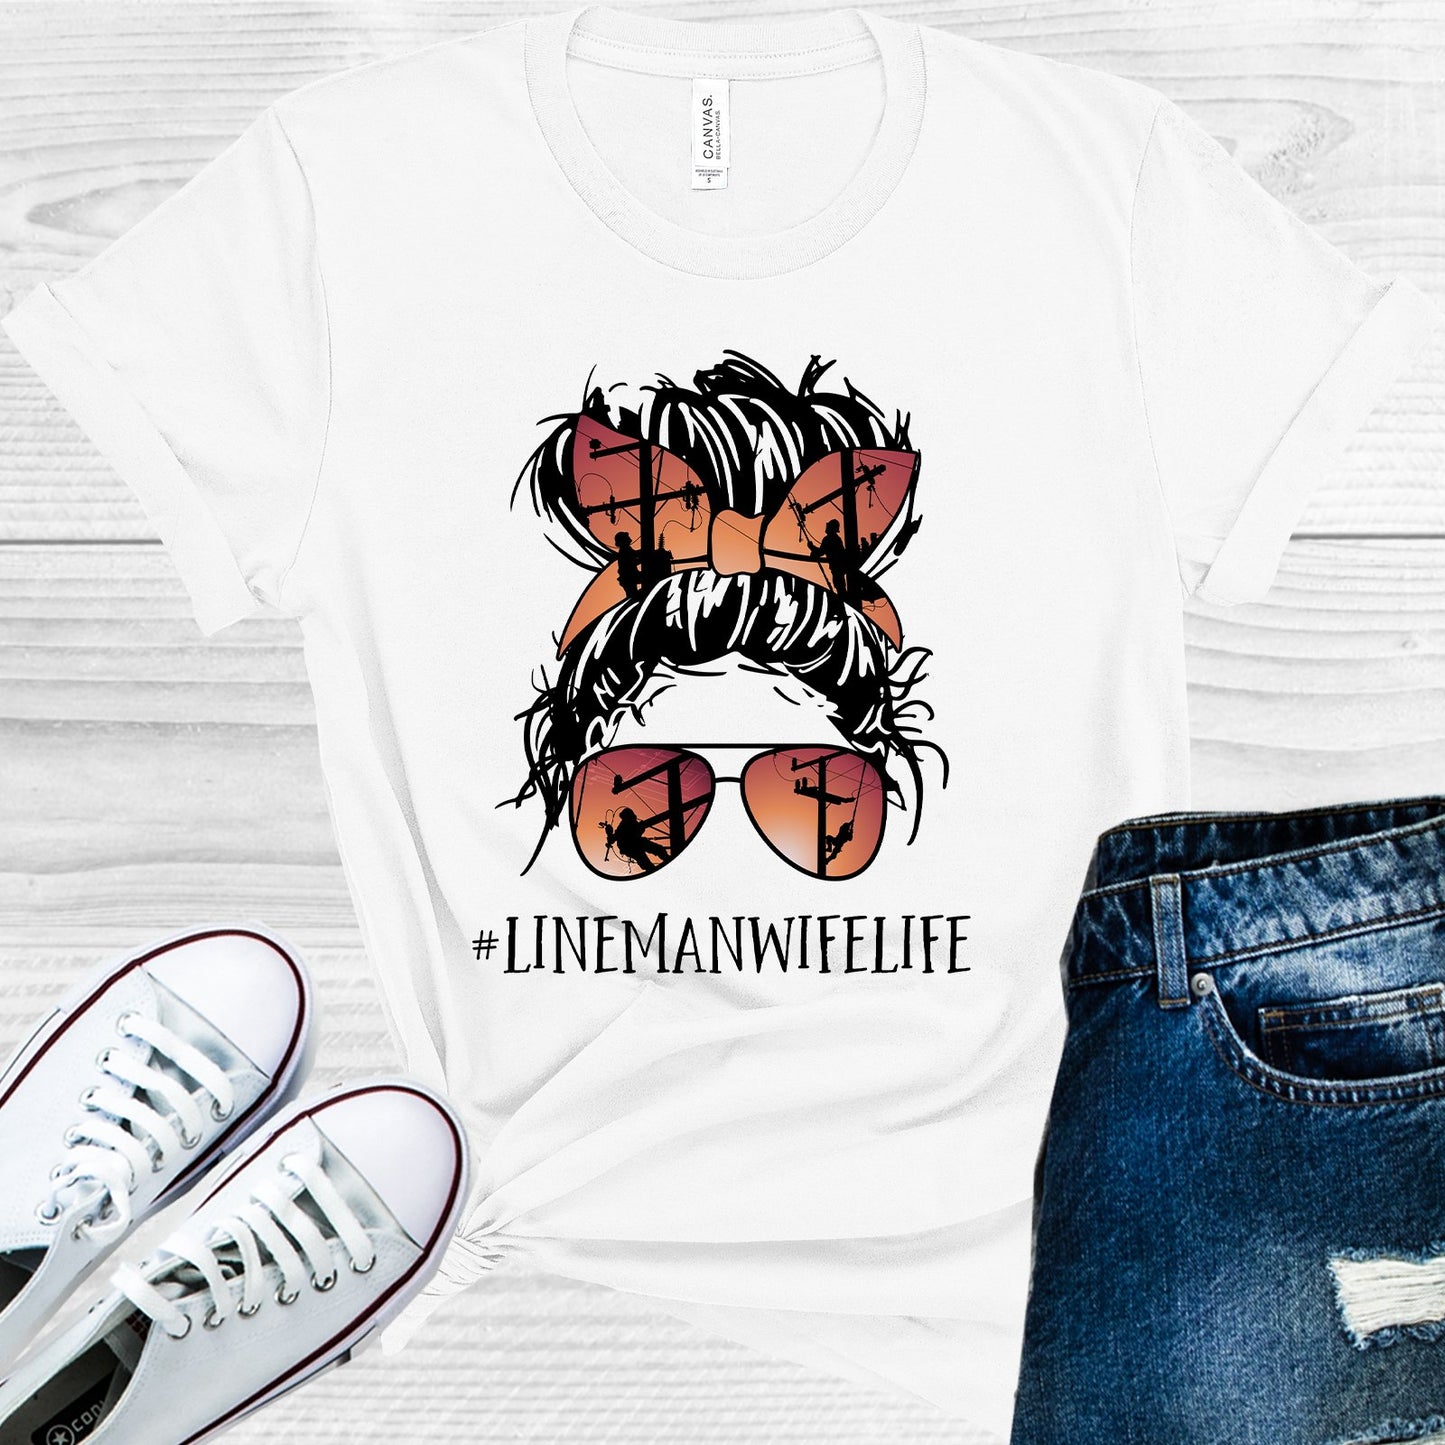 Lineman Wife Life #lifemanwifelife Graphic Tee Graphic Tee